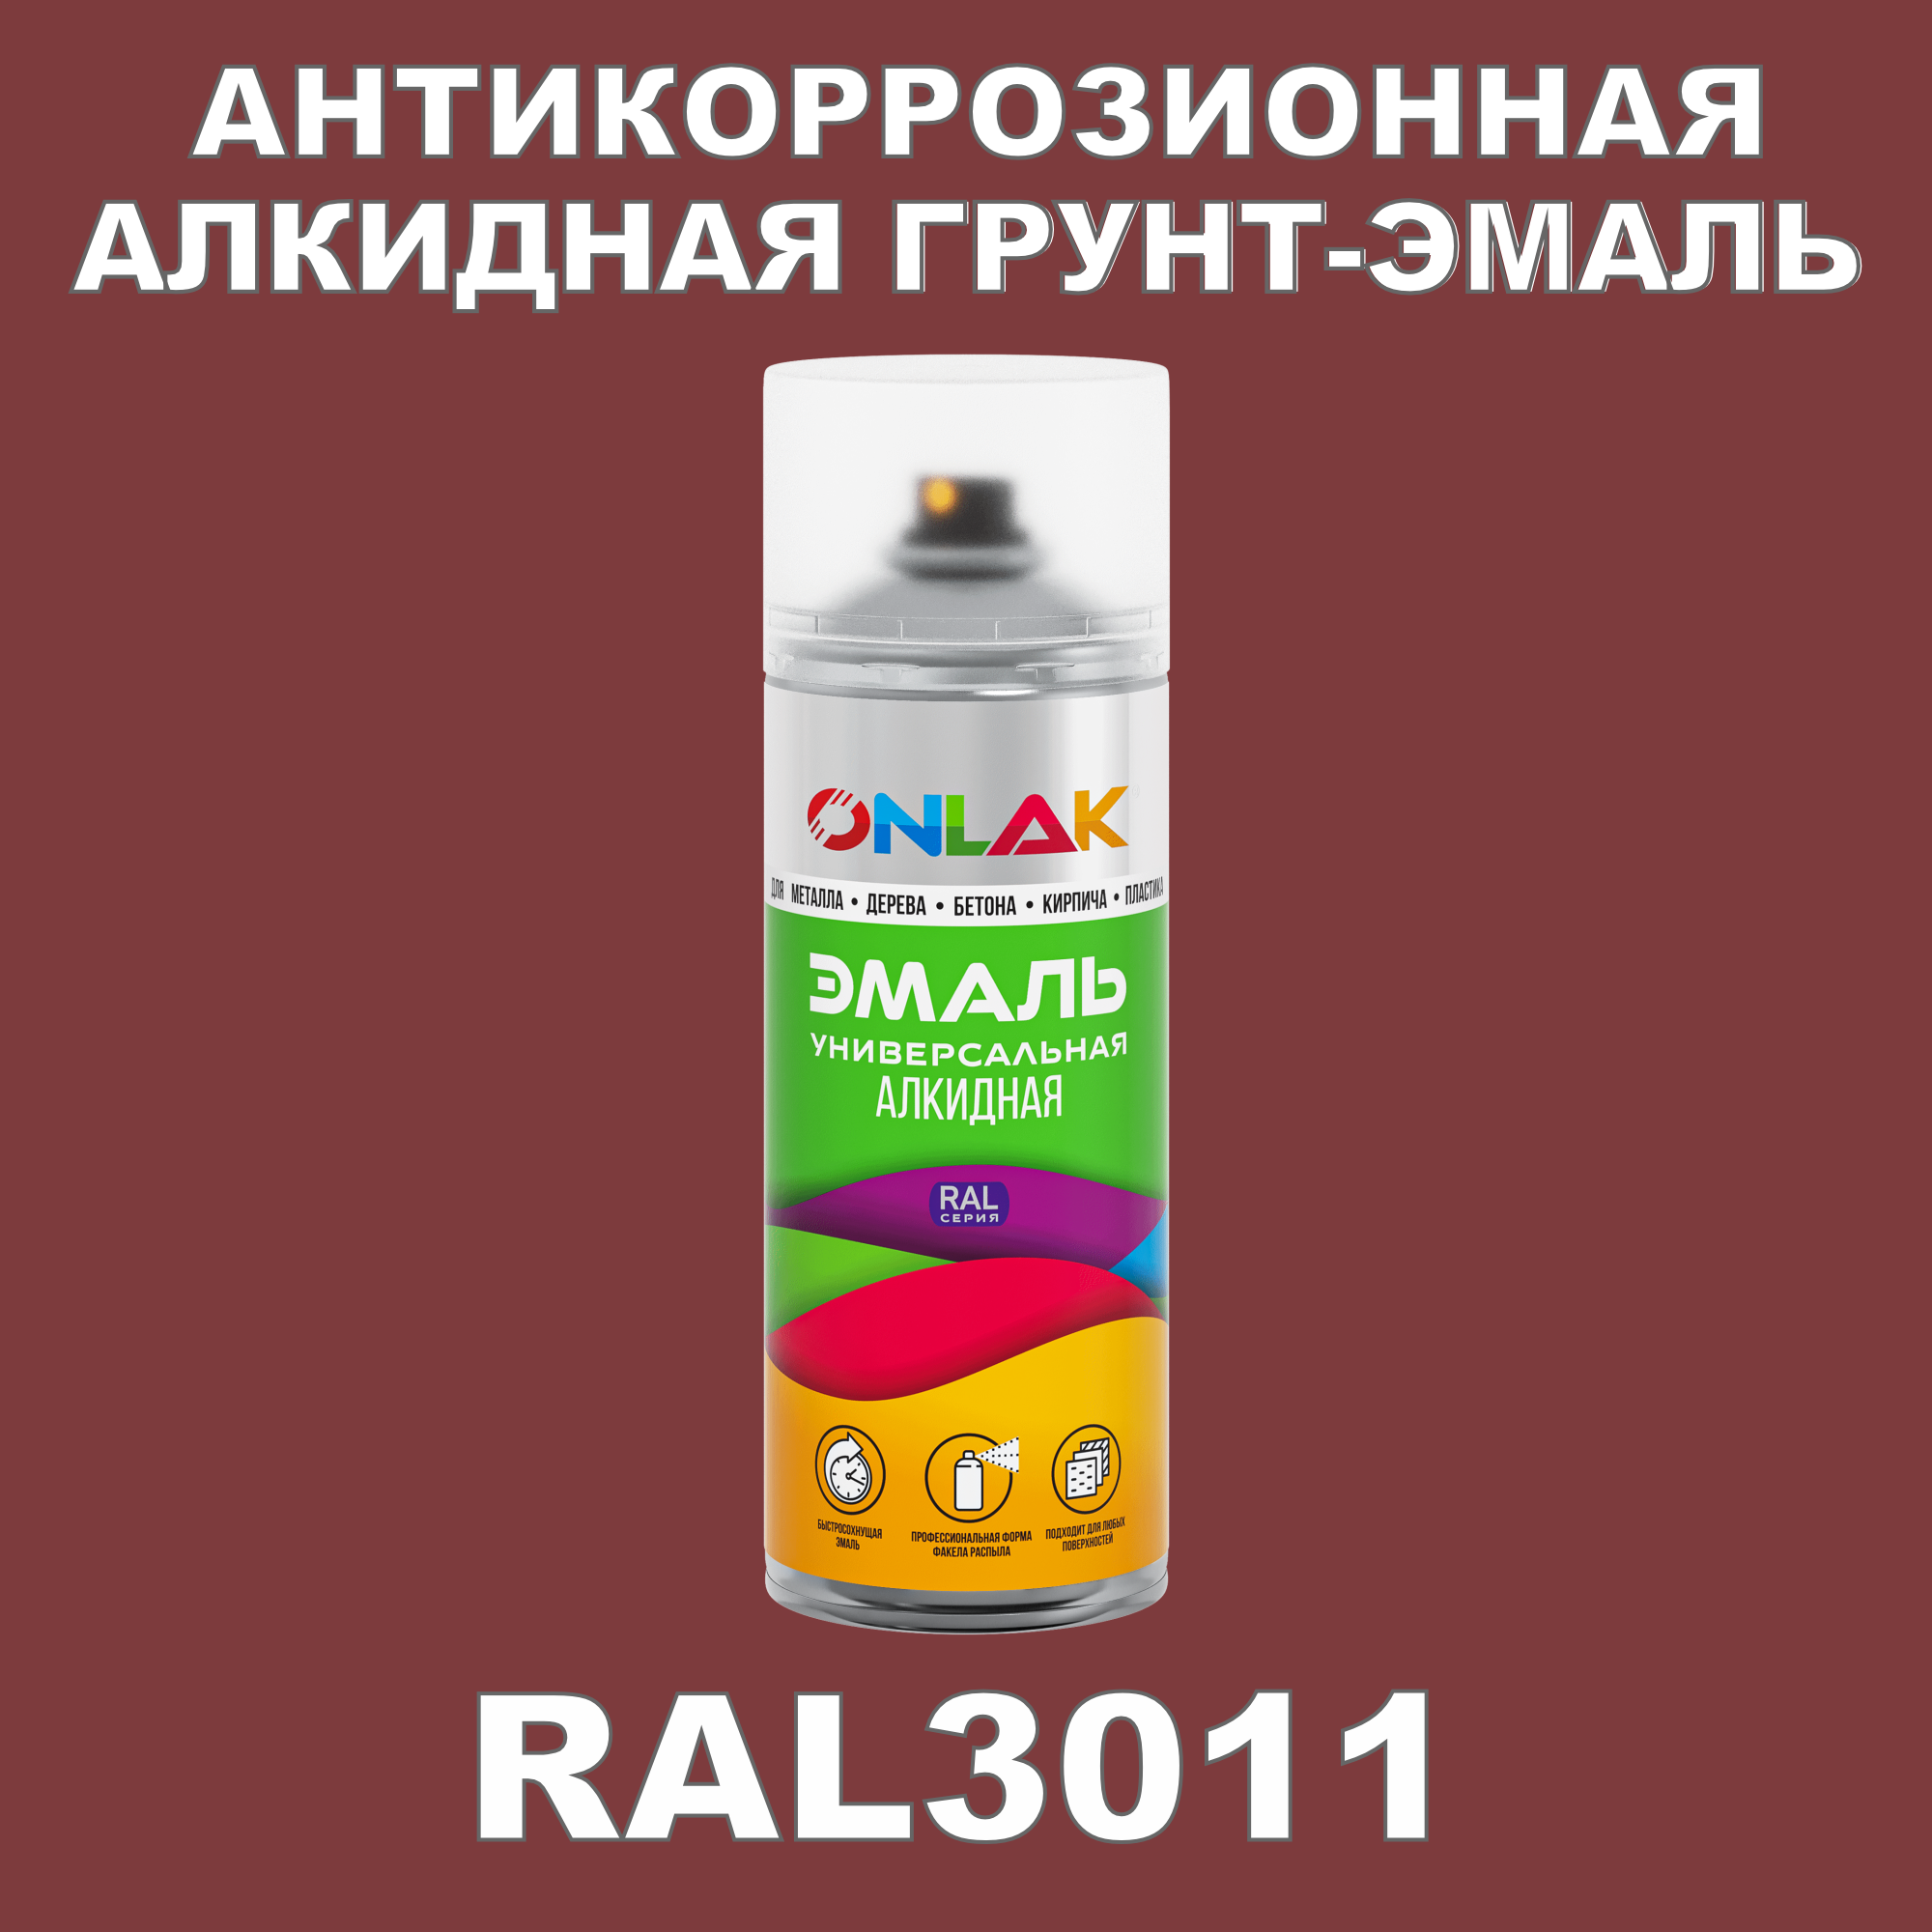 Антикоррозионная грунт-эмаль ONLAK RAL3011 полуматовая для металла и защиты от ржавчины